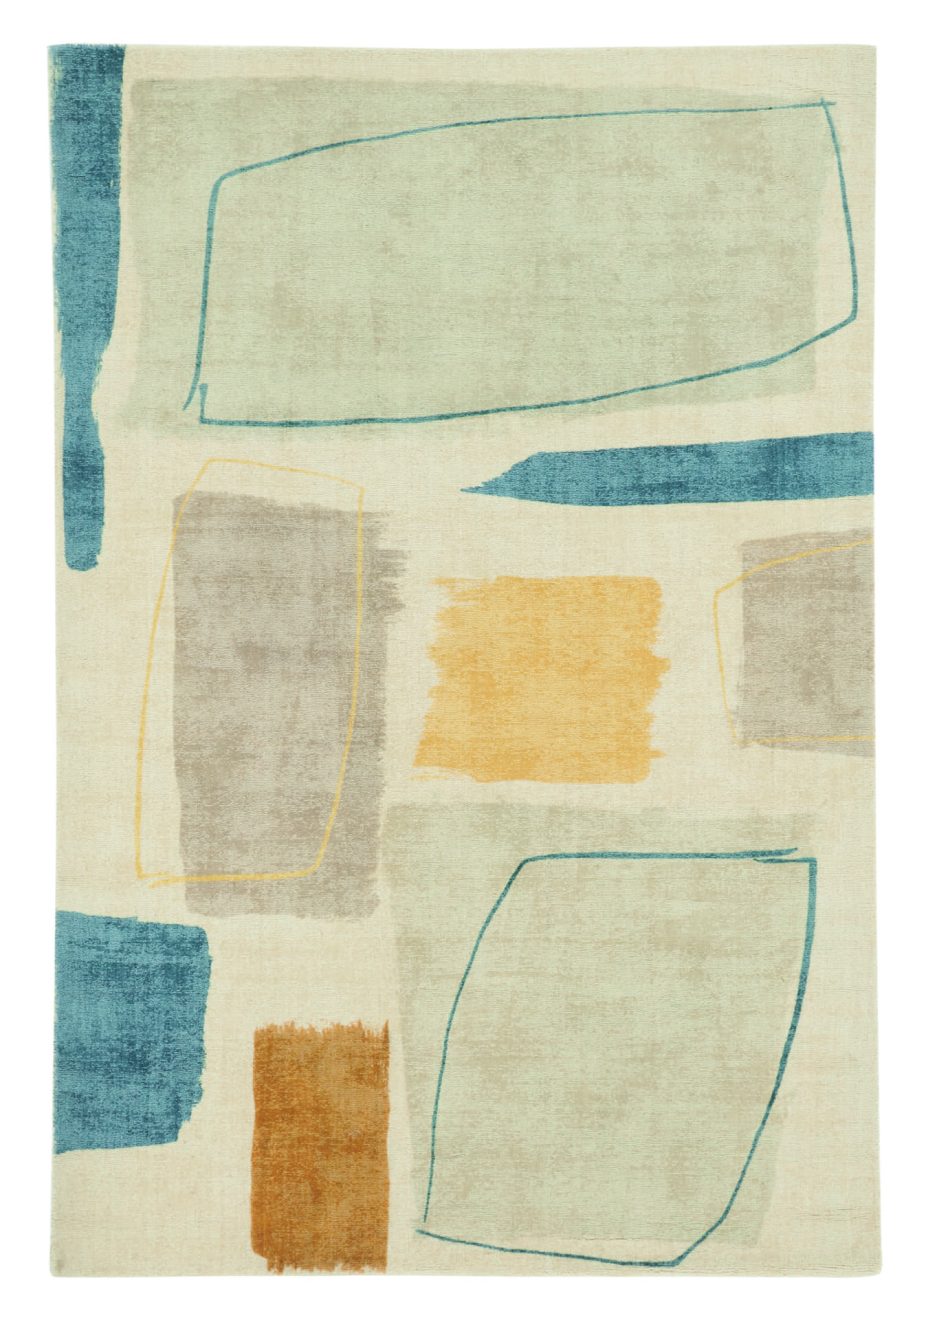 Composition Papaya 23706 rug by Scion